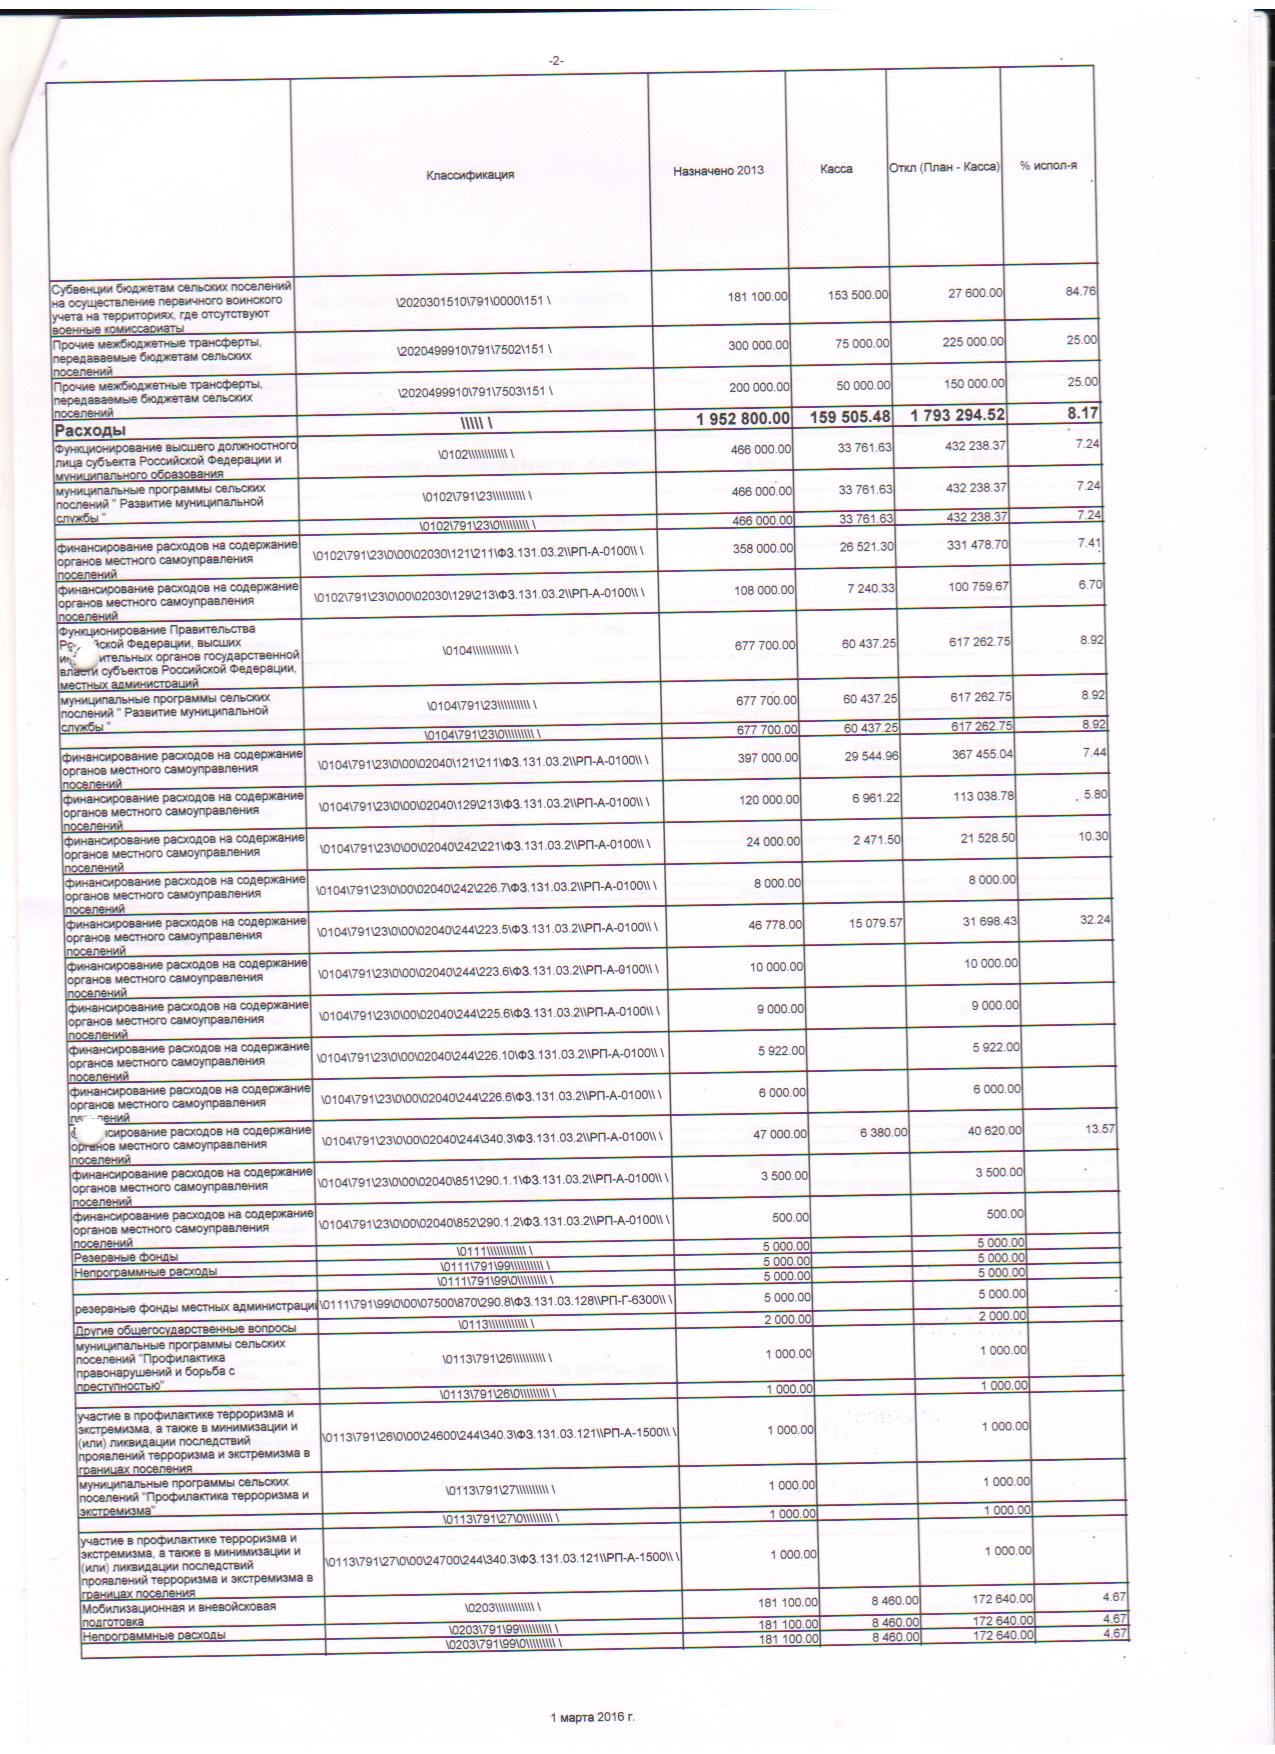 месячный отчет об исполнении бюджета на 01.03.2016г. 001